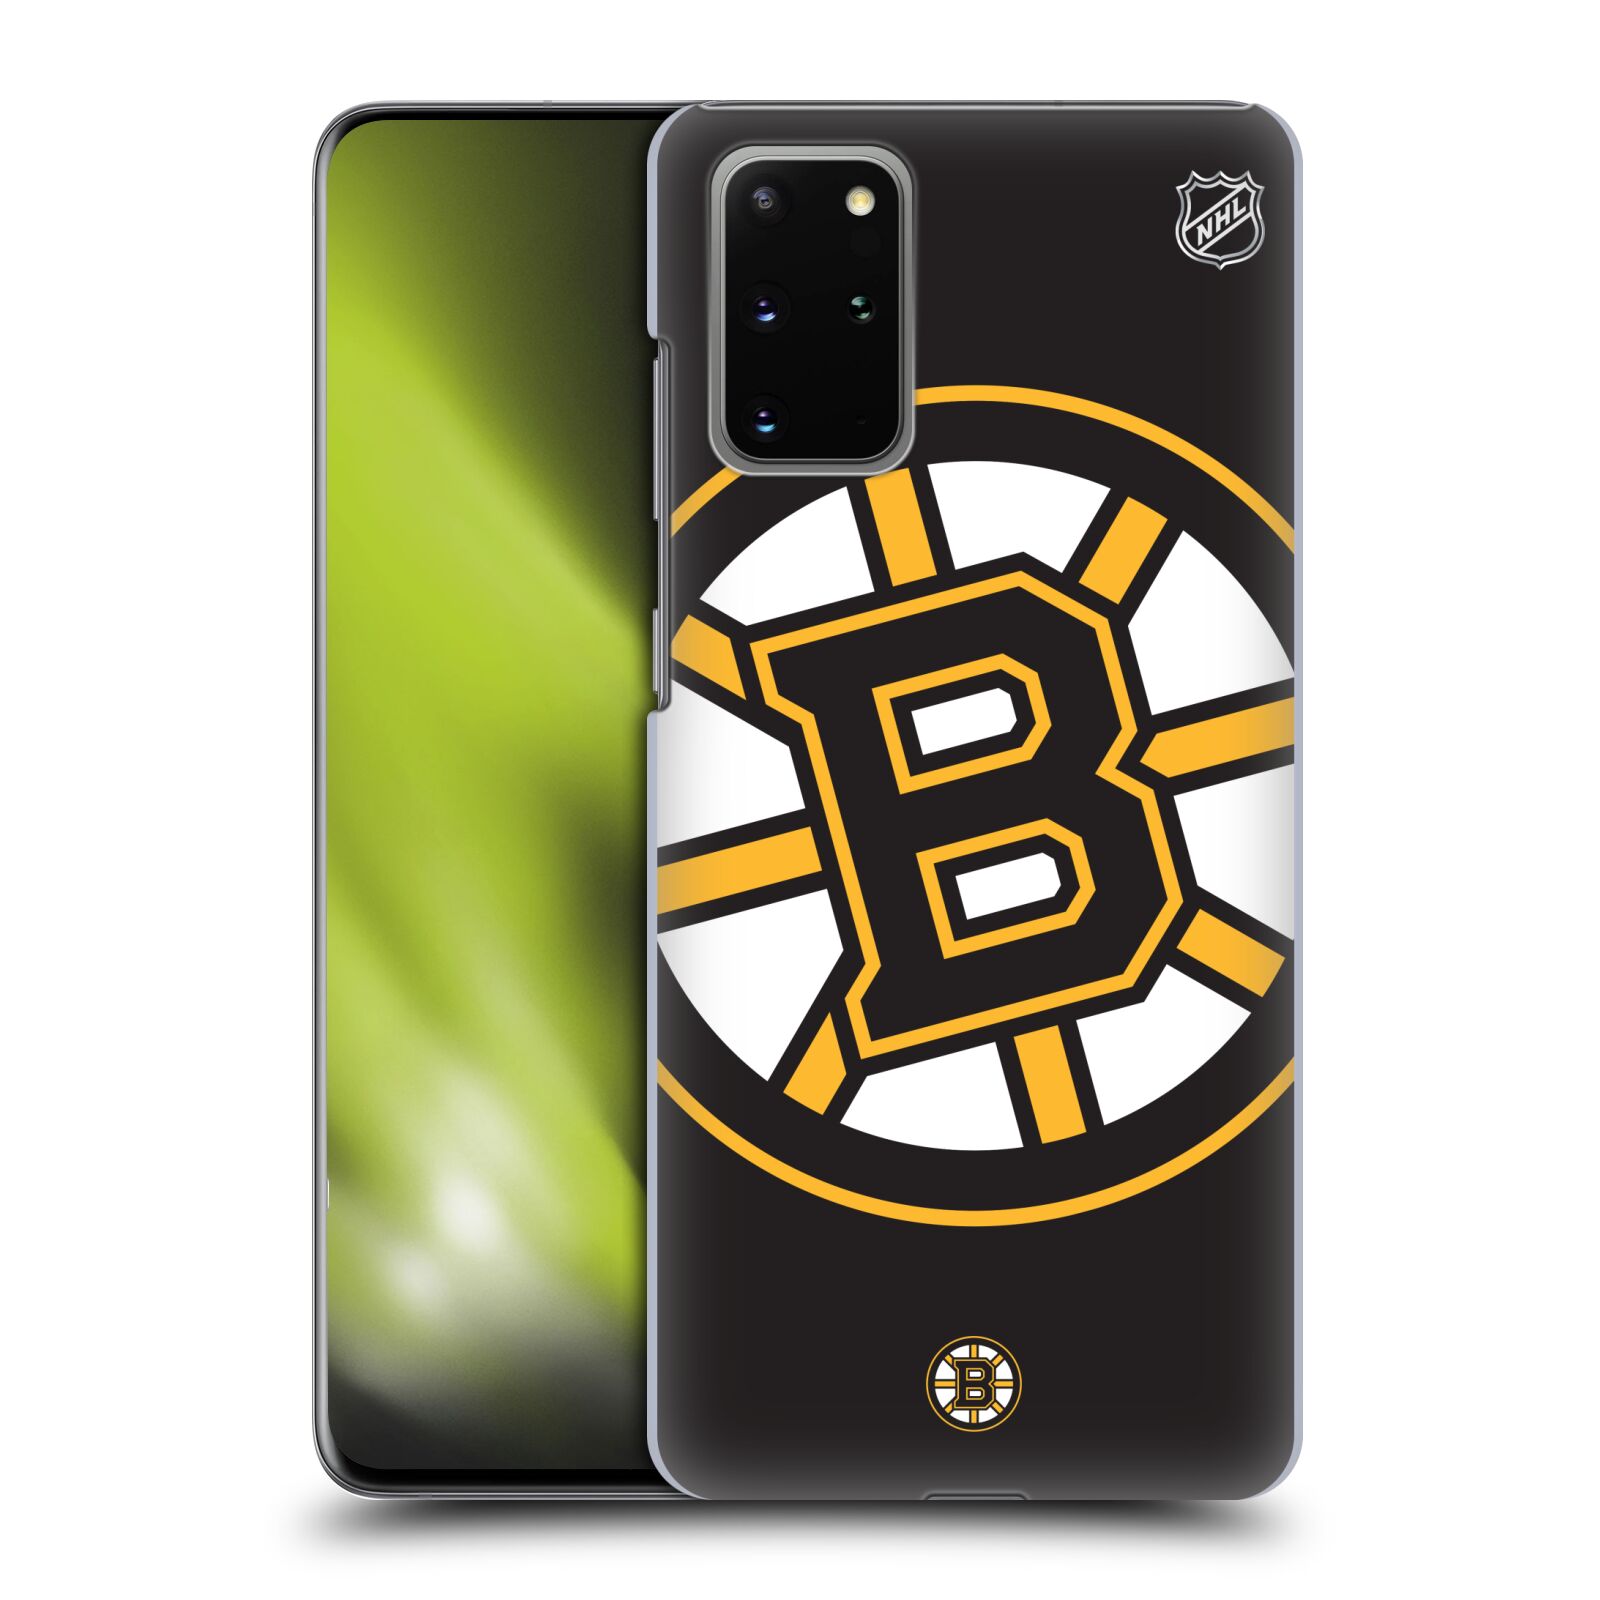 Pouzdro na mobil Samsung Galaxy S20+ - HEAD CASE - Hokej NHL - Boston Bruins - velký znak